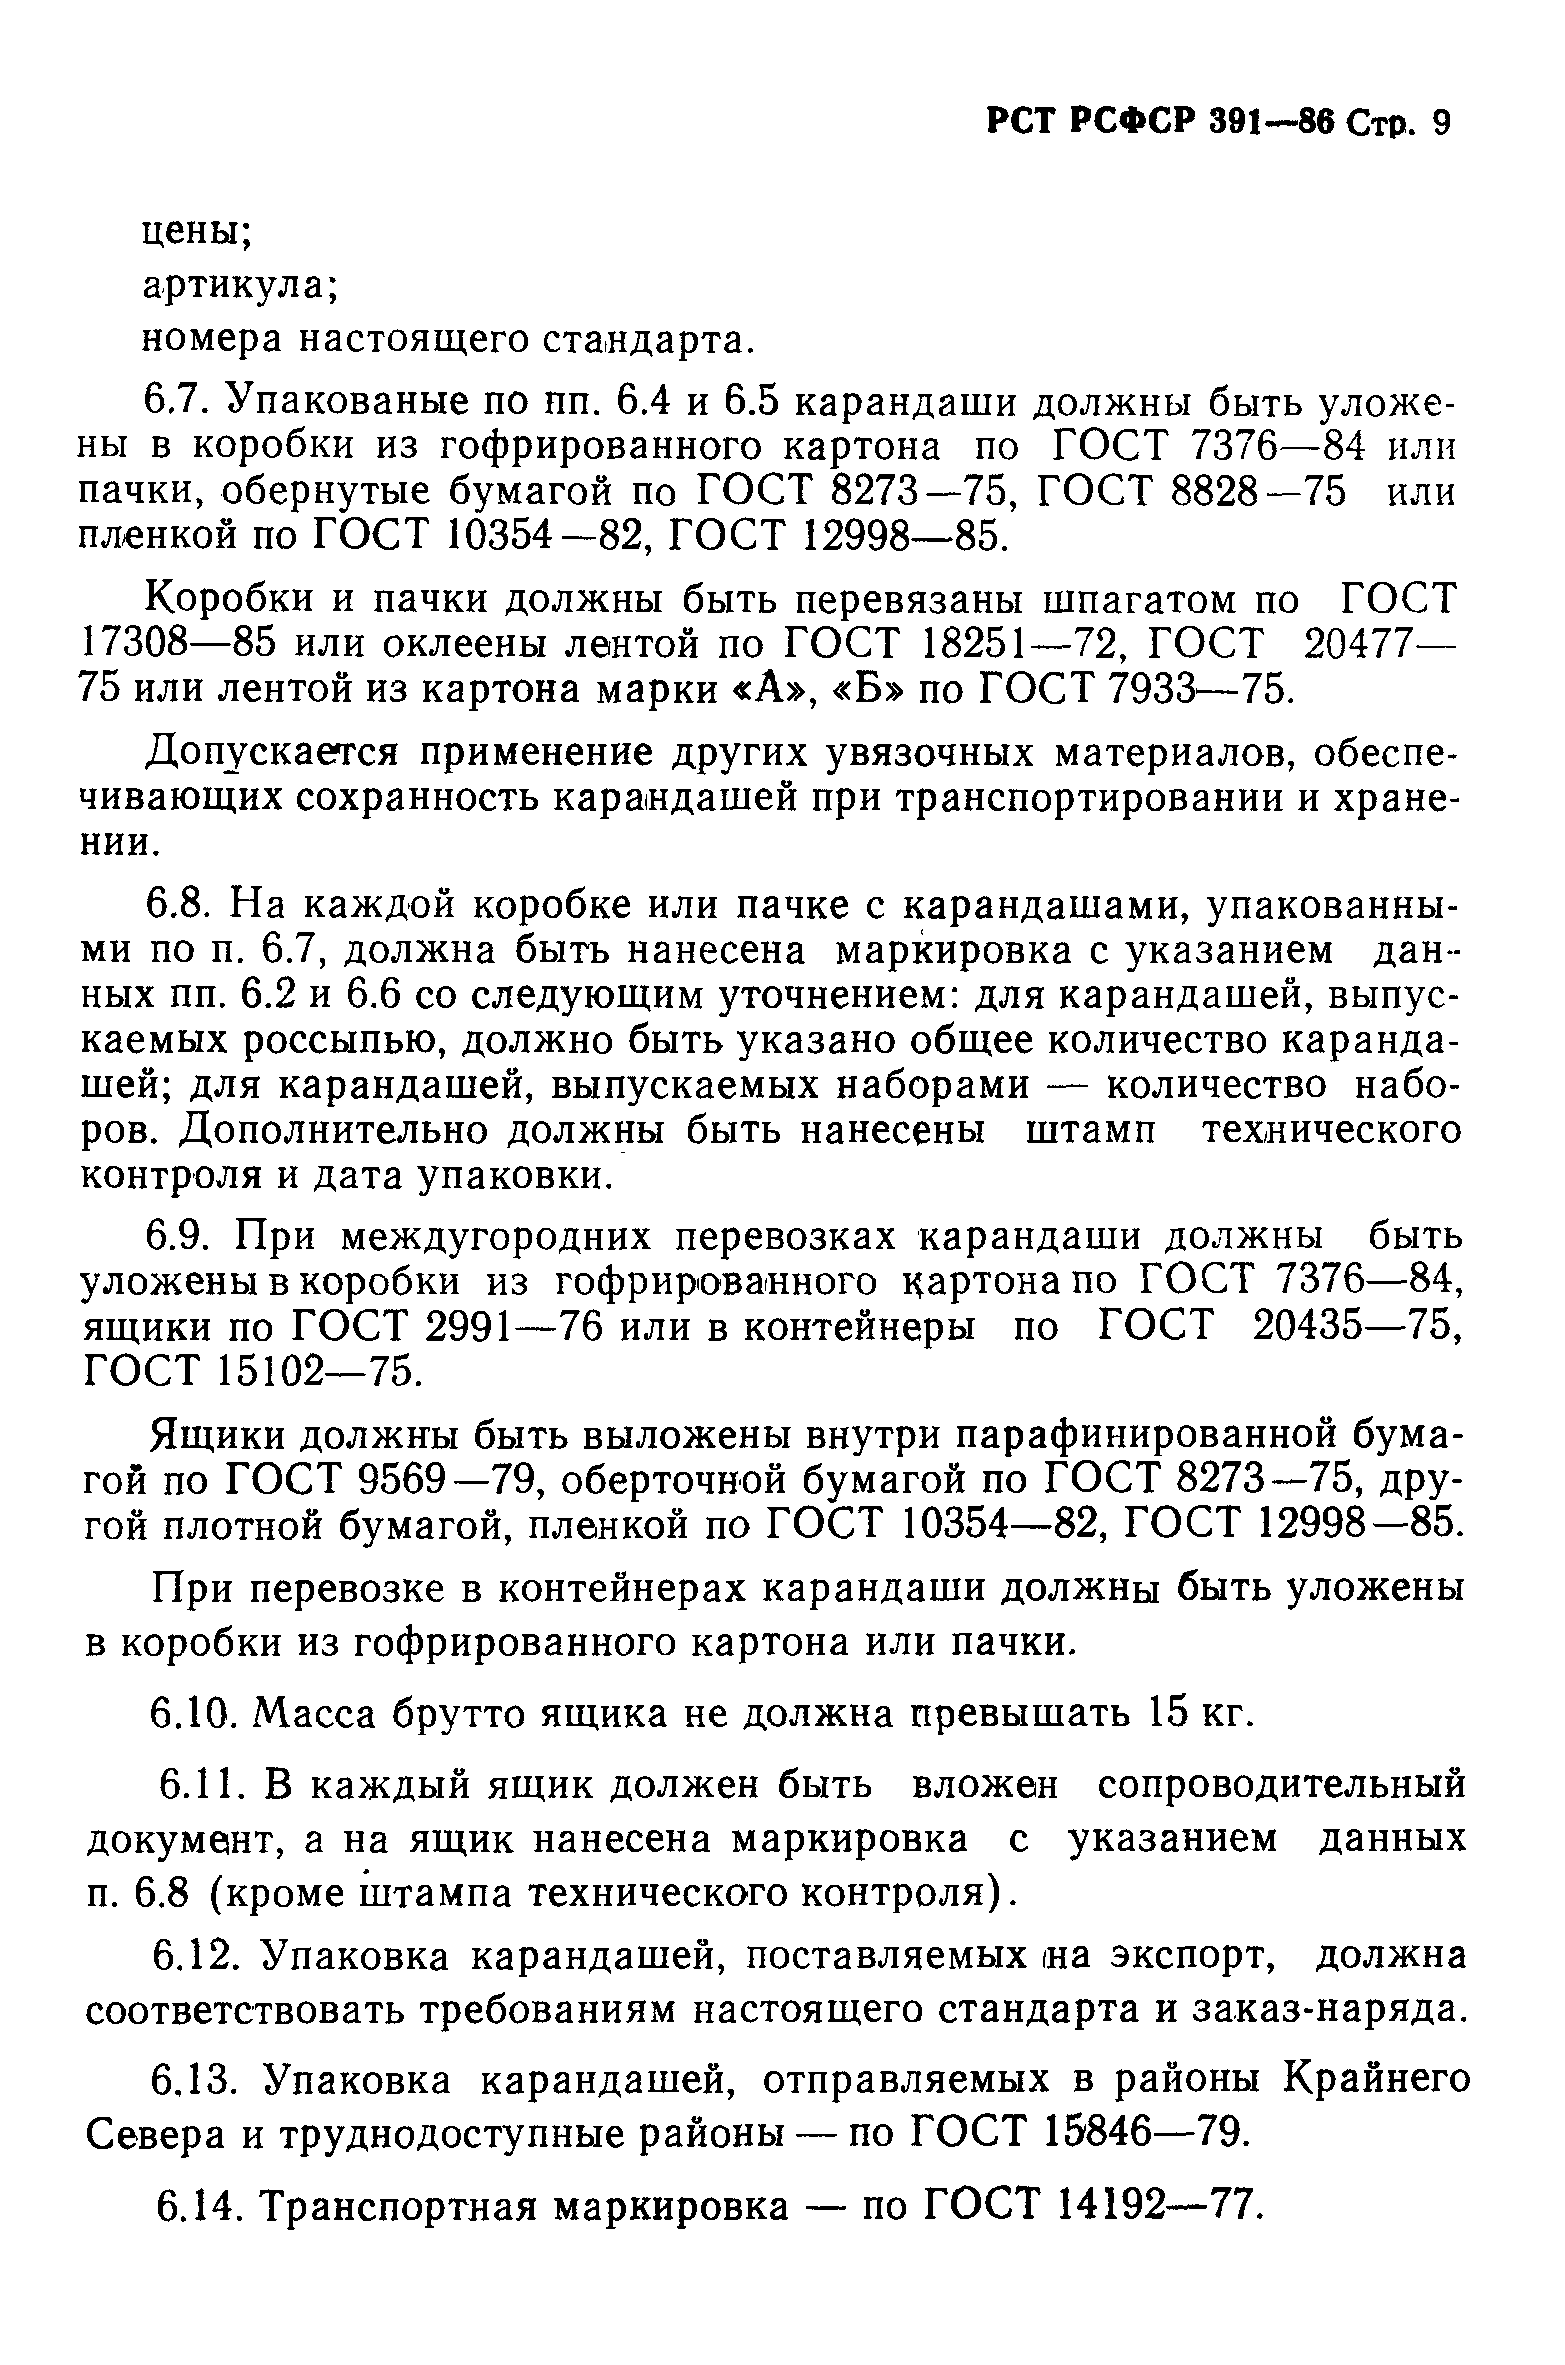 РСТ РСФСР 391-86